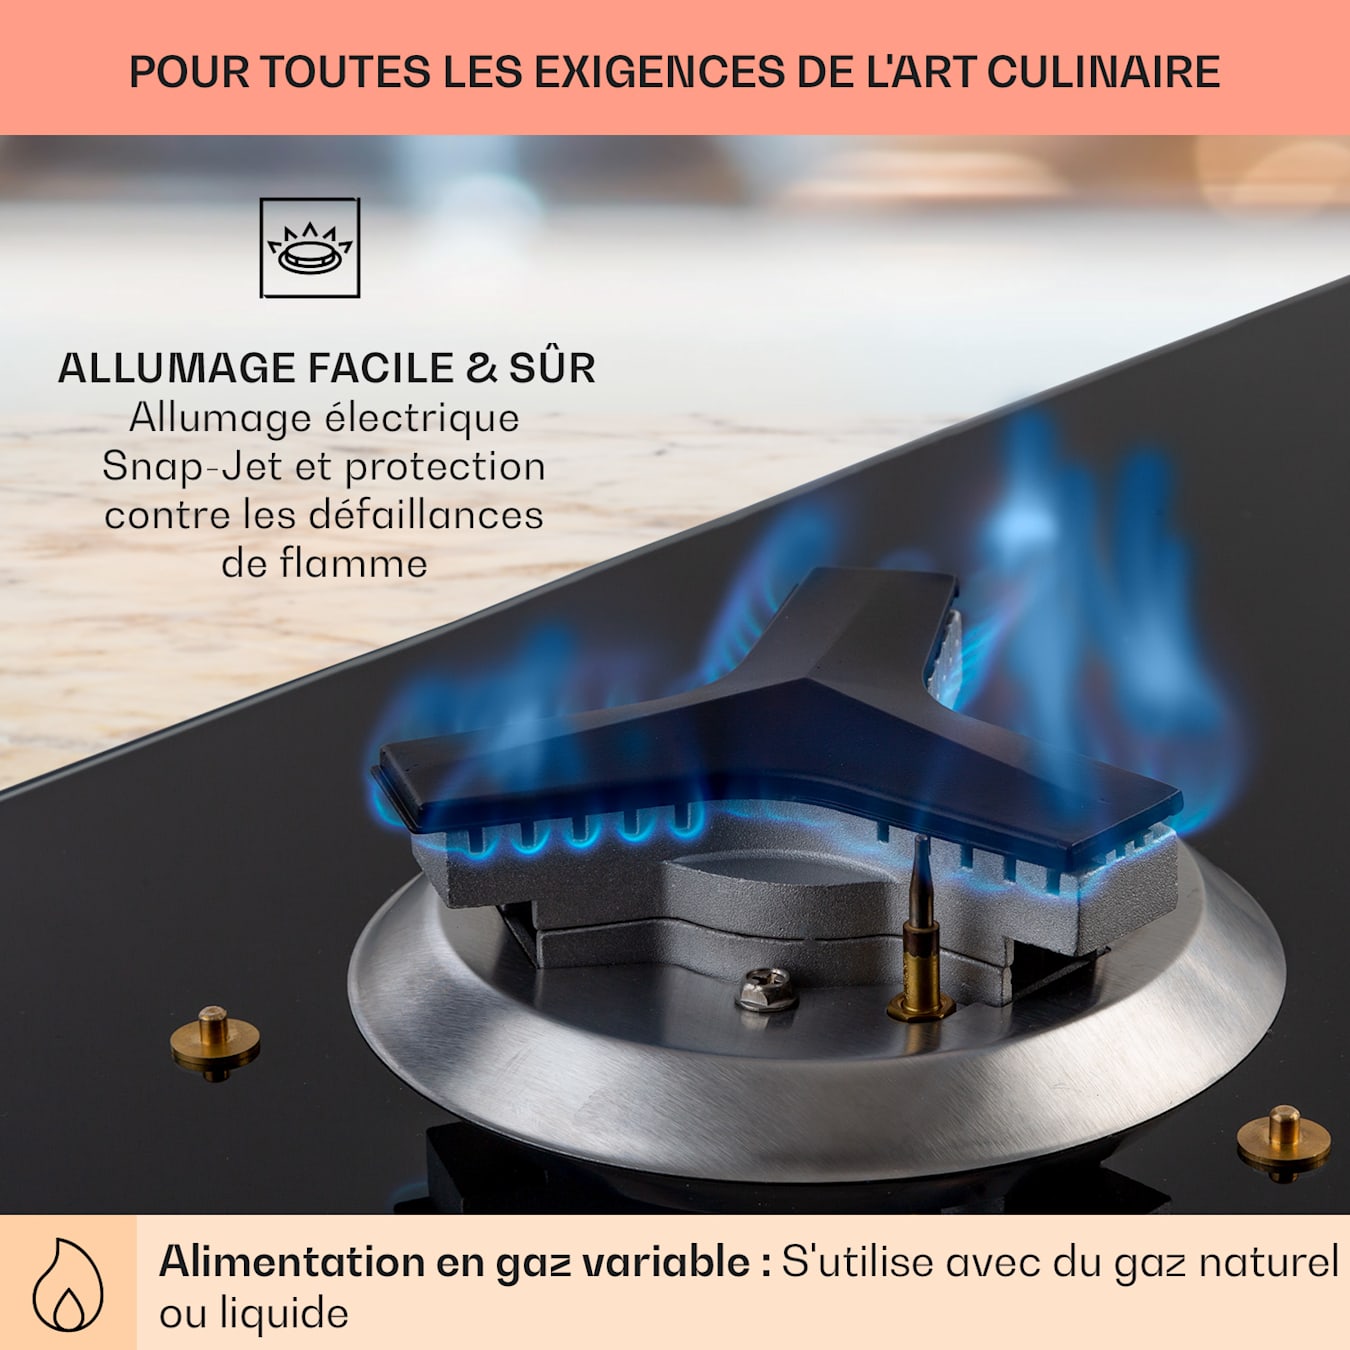 Plaque de cuisson à gaz Alchemist 3, 3 feux, brûleur en aluminium